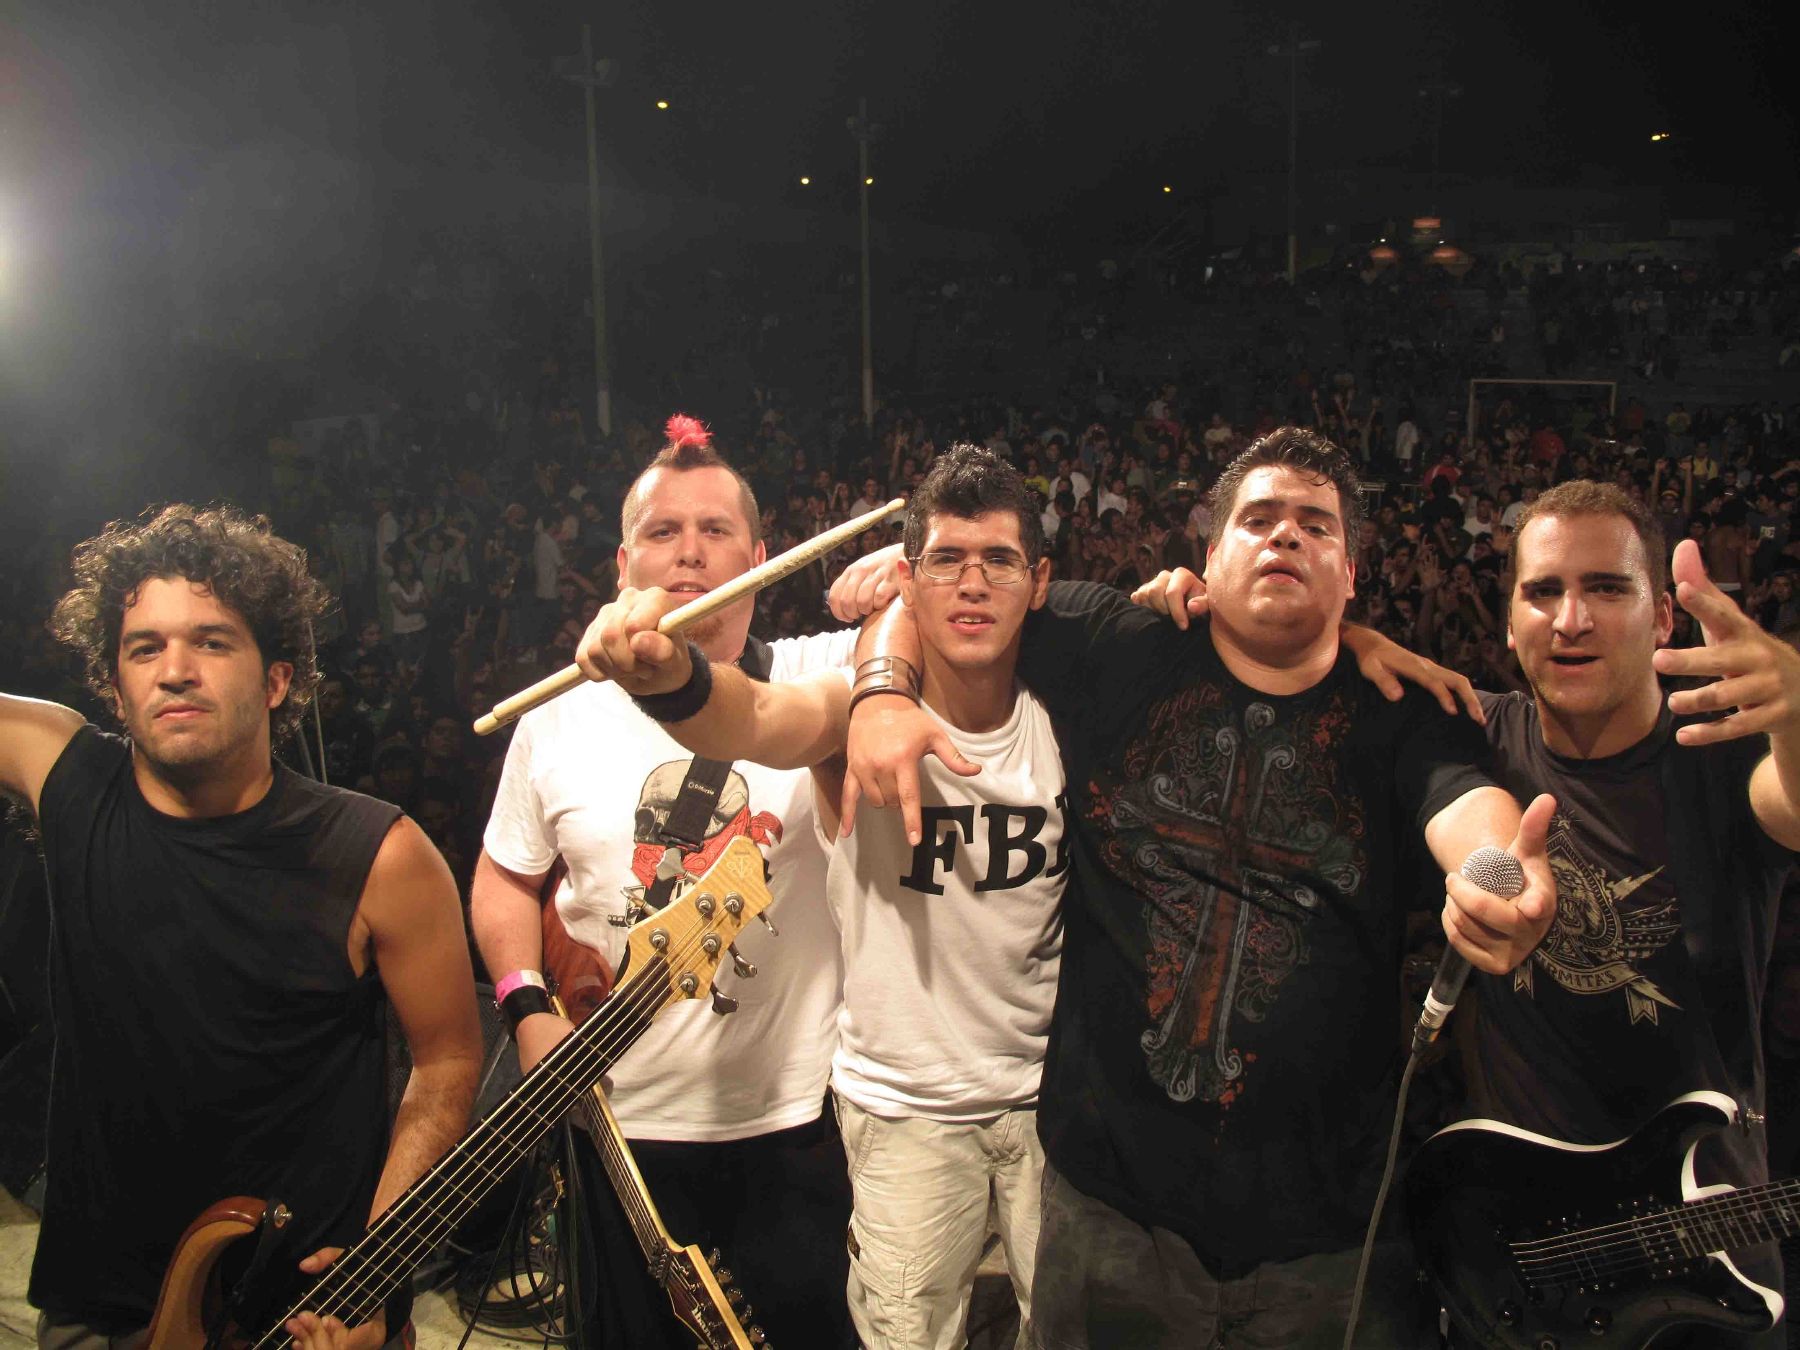 Banda nacional Por hablar teloneará concierto de Korn Noticias